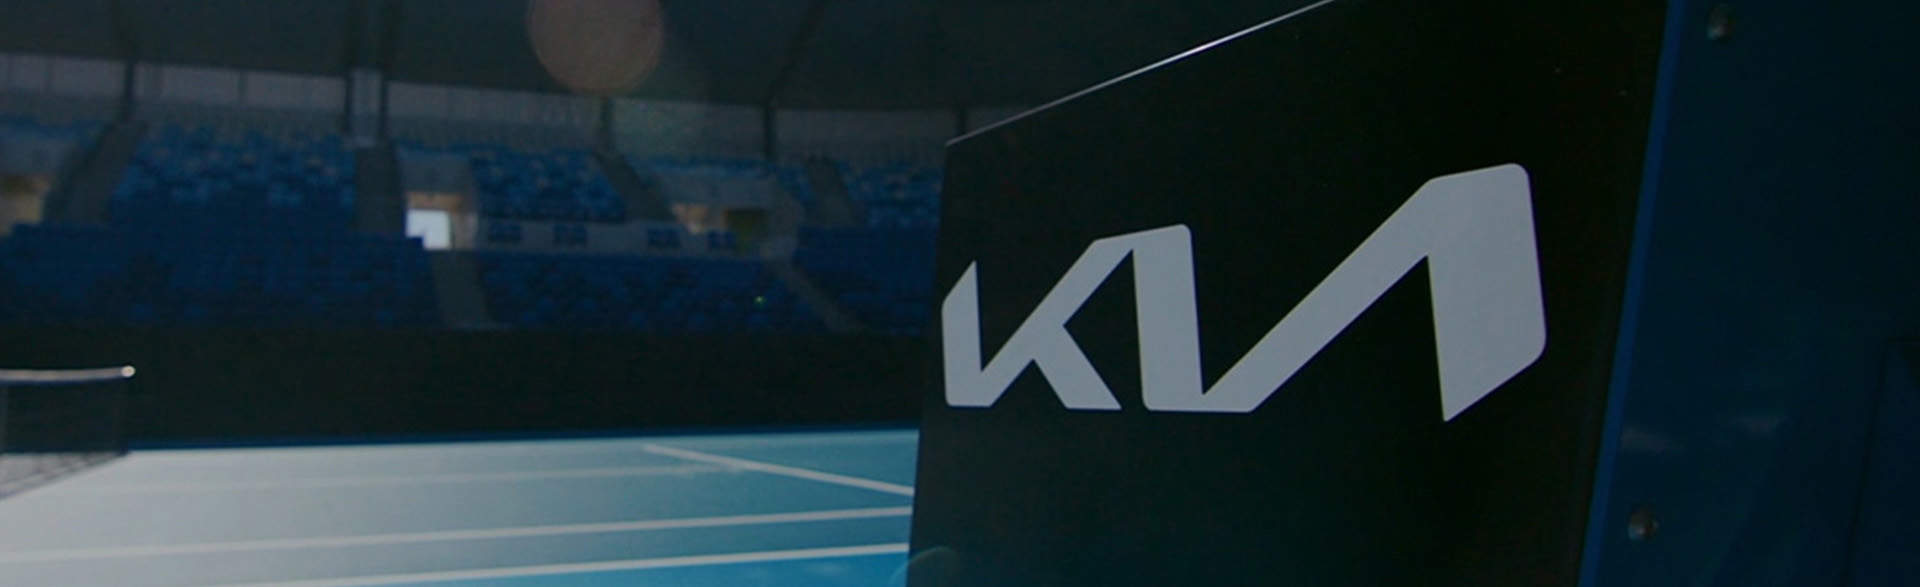 Kia，澳洲網球公開賽主要贊助商